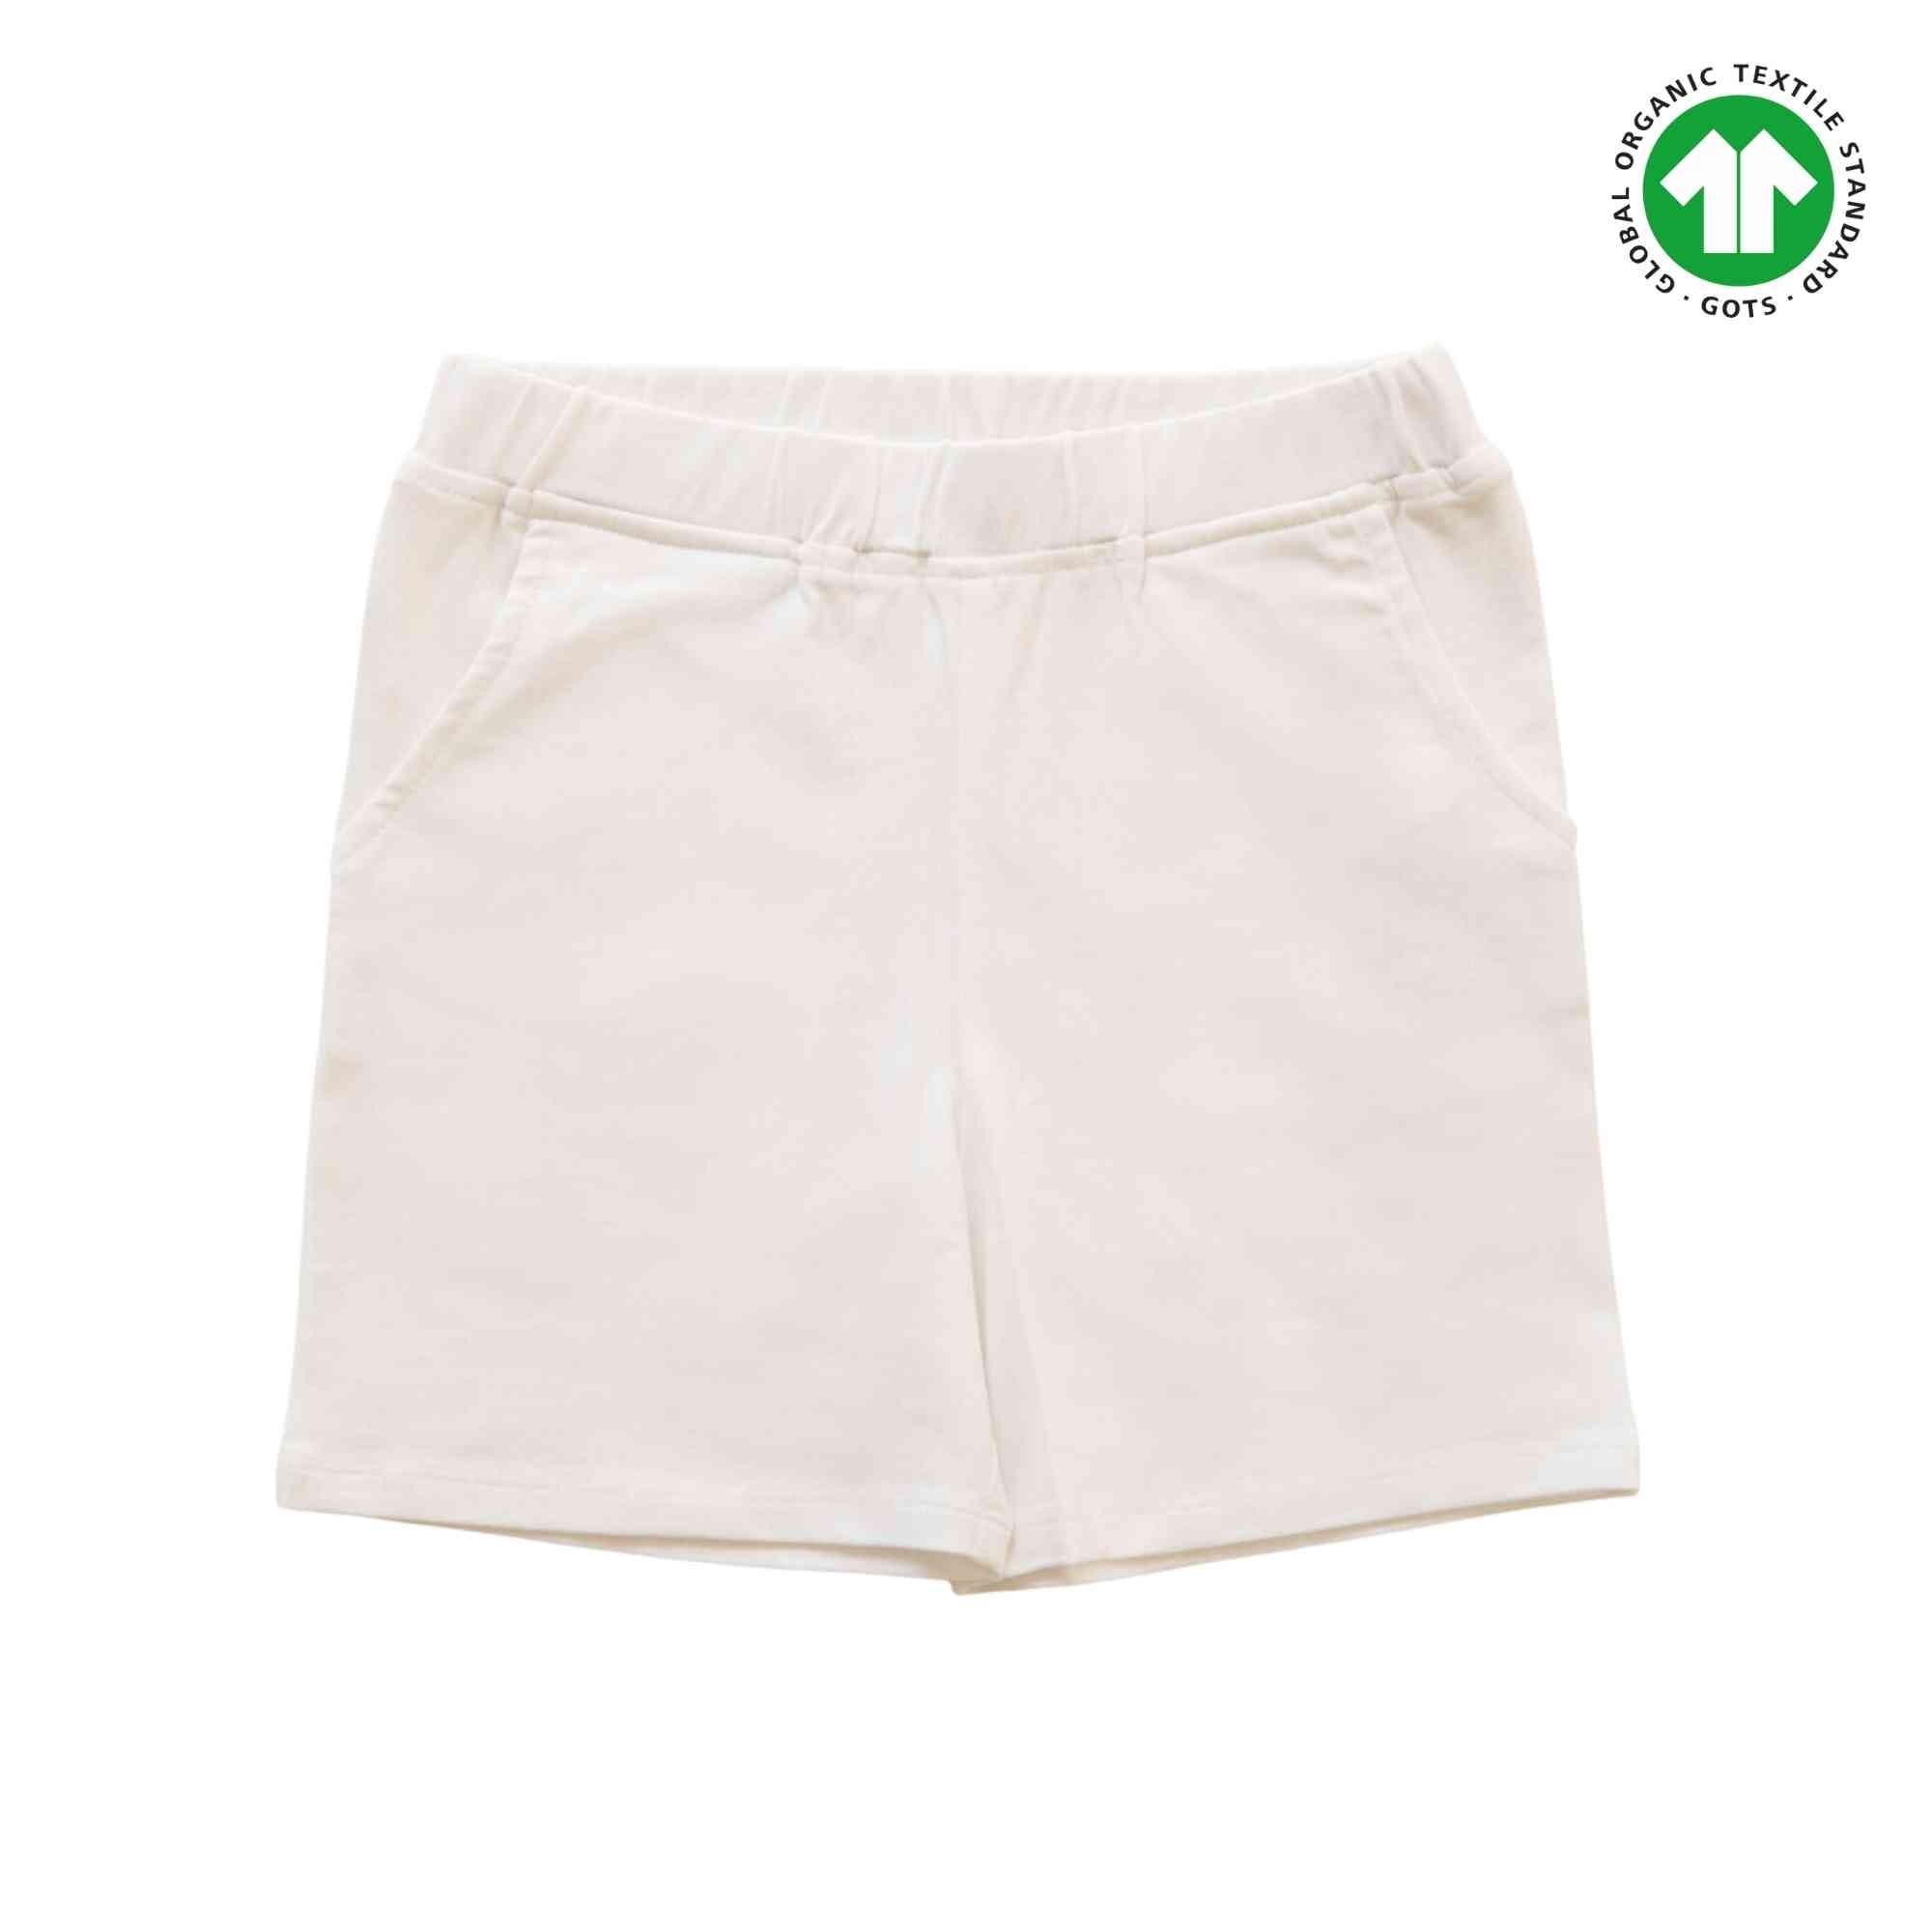 Boy Shorts - White